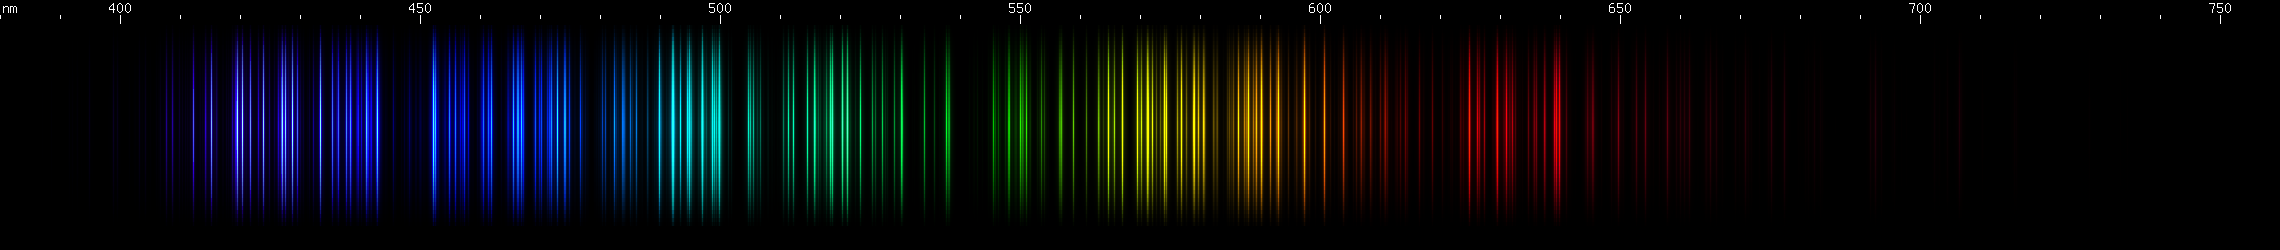 Spectral Lines of Lanthanum